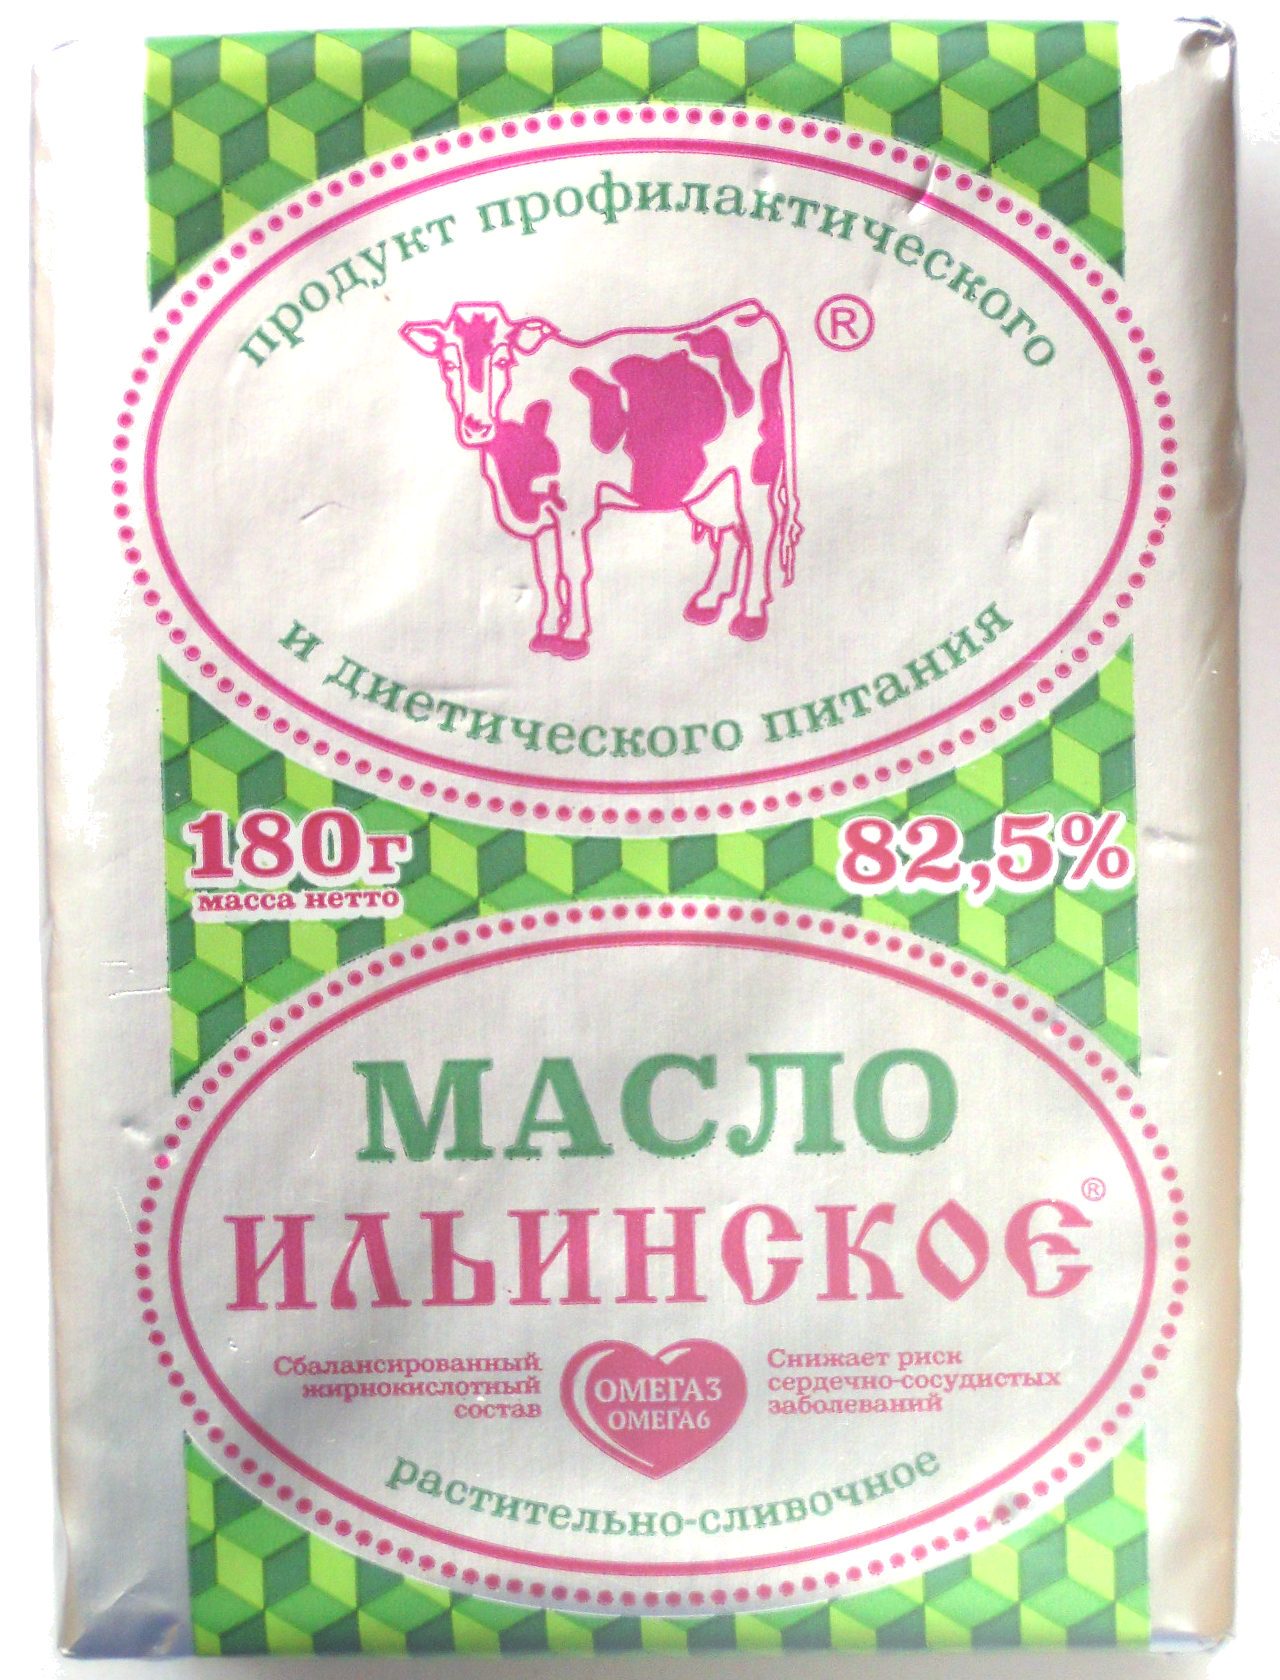 Масло Ильинское растительно сливочное - Product - ru